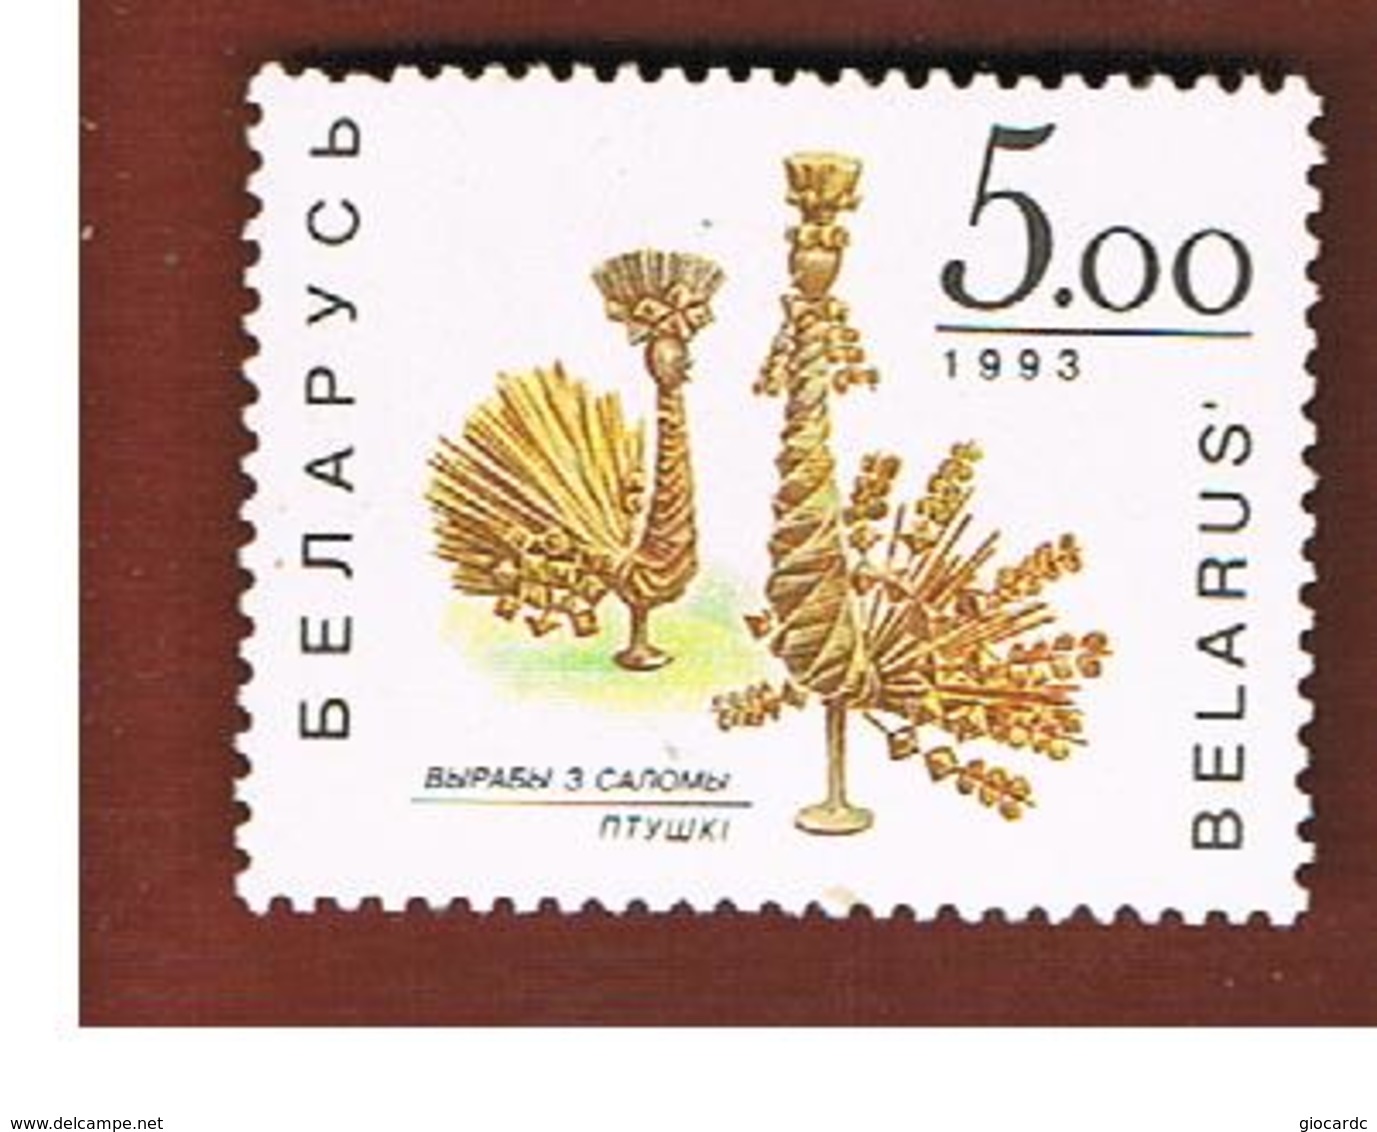 BIELORUSSIA (BELARUS)  -  SG 44   -      1992  CORN DOLLIES   -   MINT (**) - Belarus